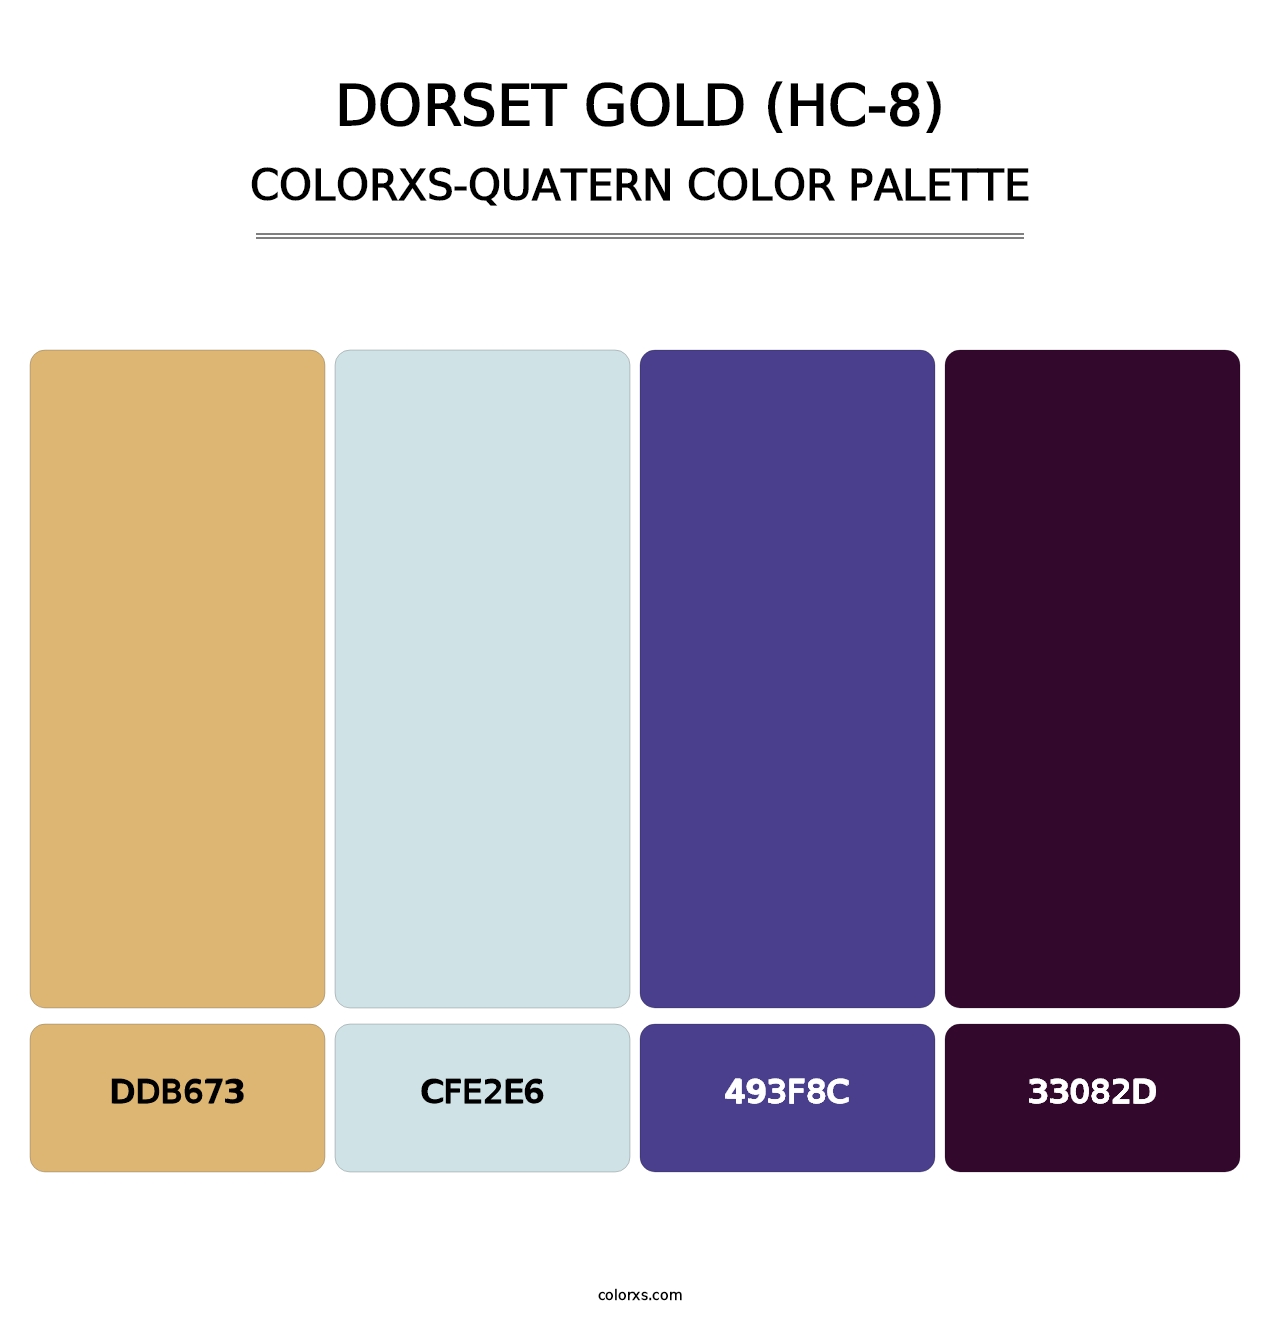 Dorset Gold (HC-8) - Colorxs Quatern Palette